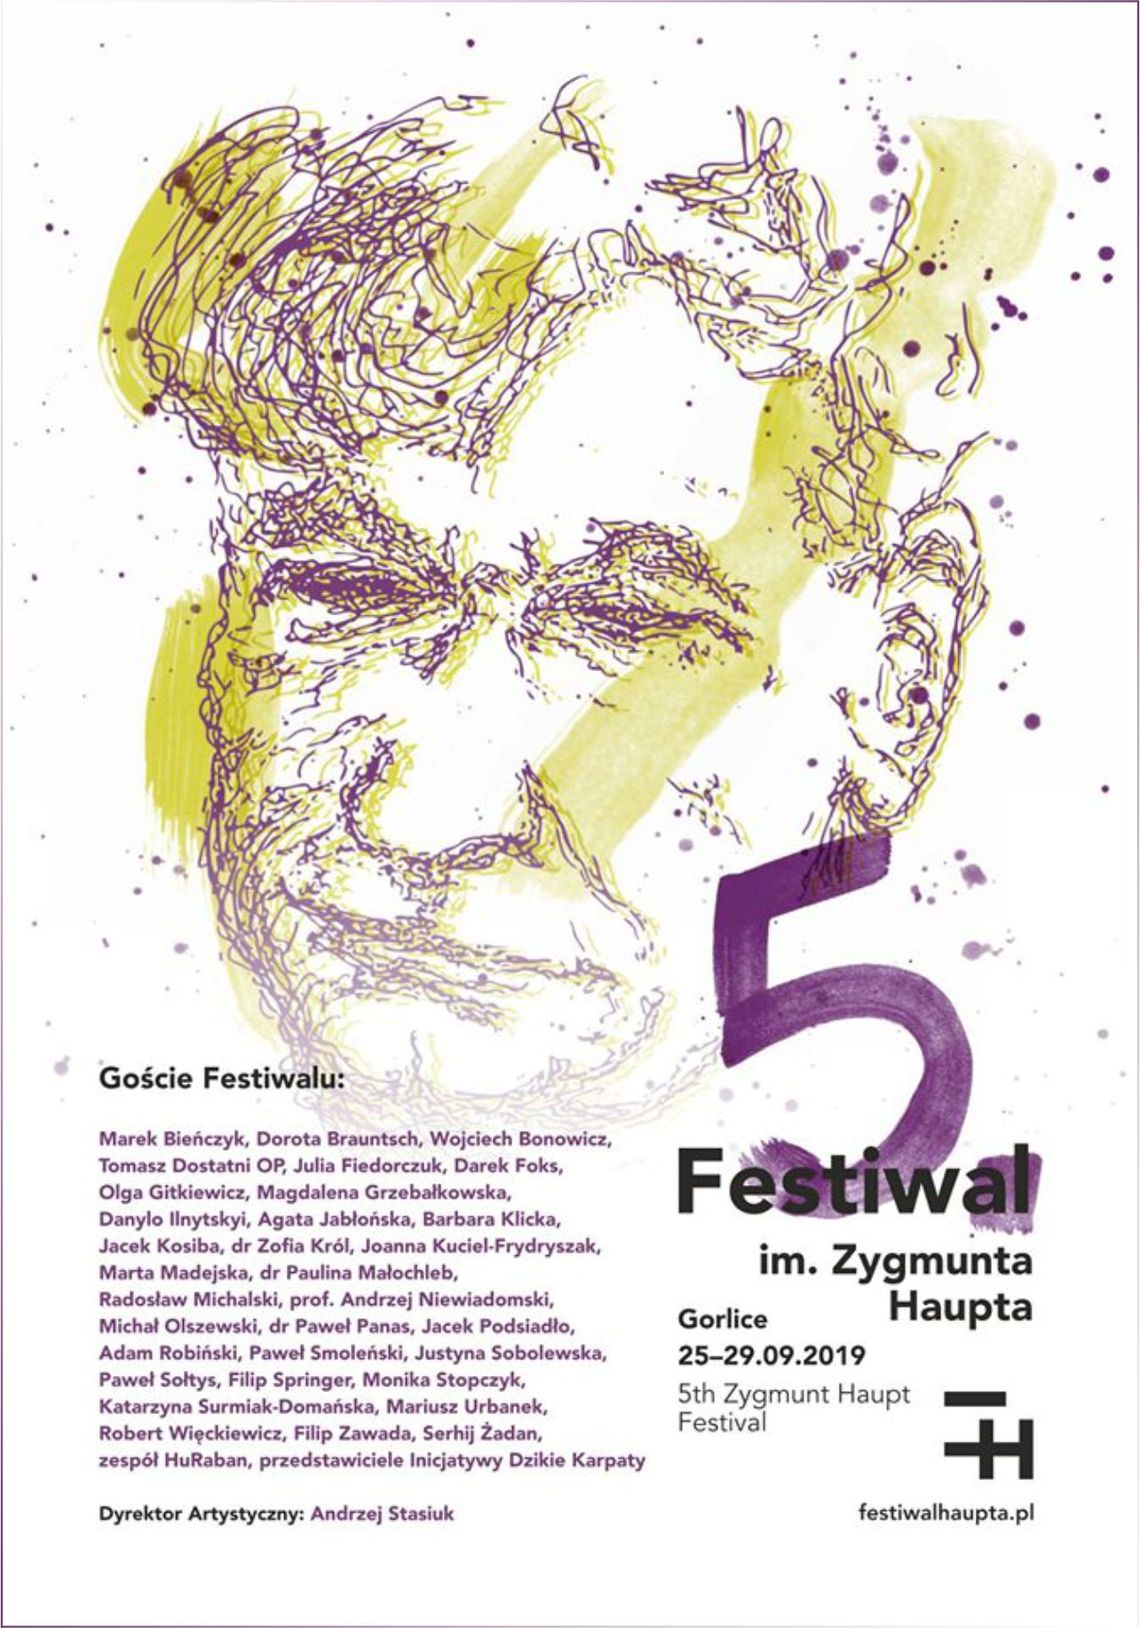 Festiwal im. Zygmunta Haupta